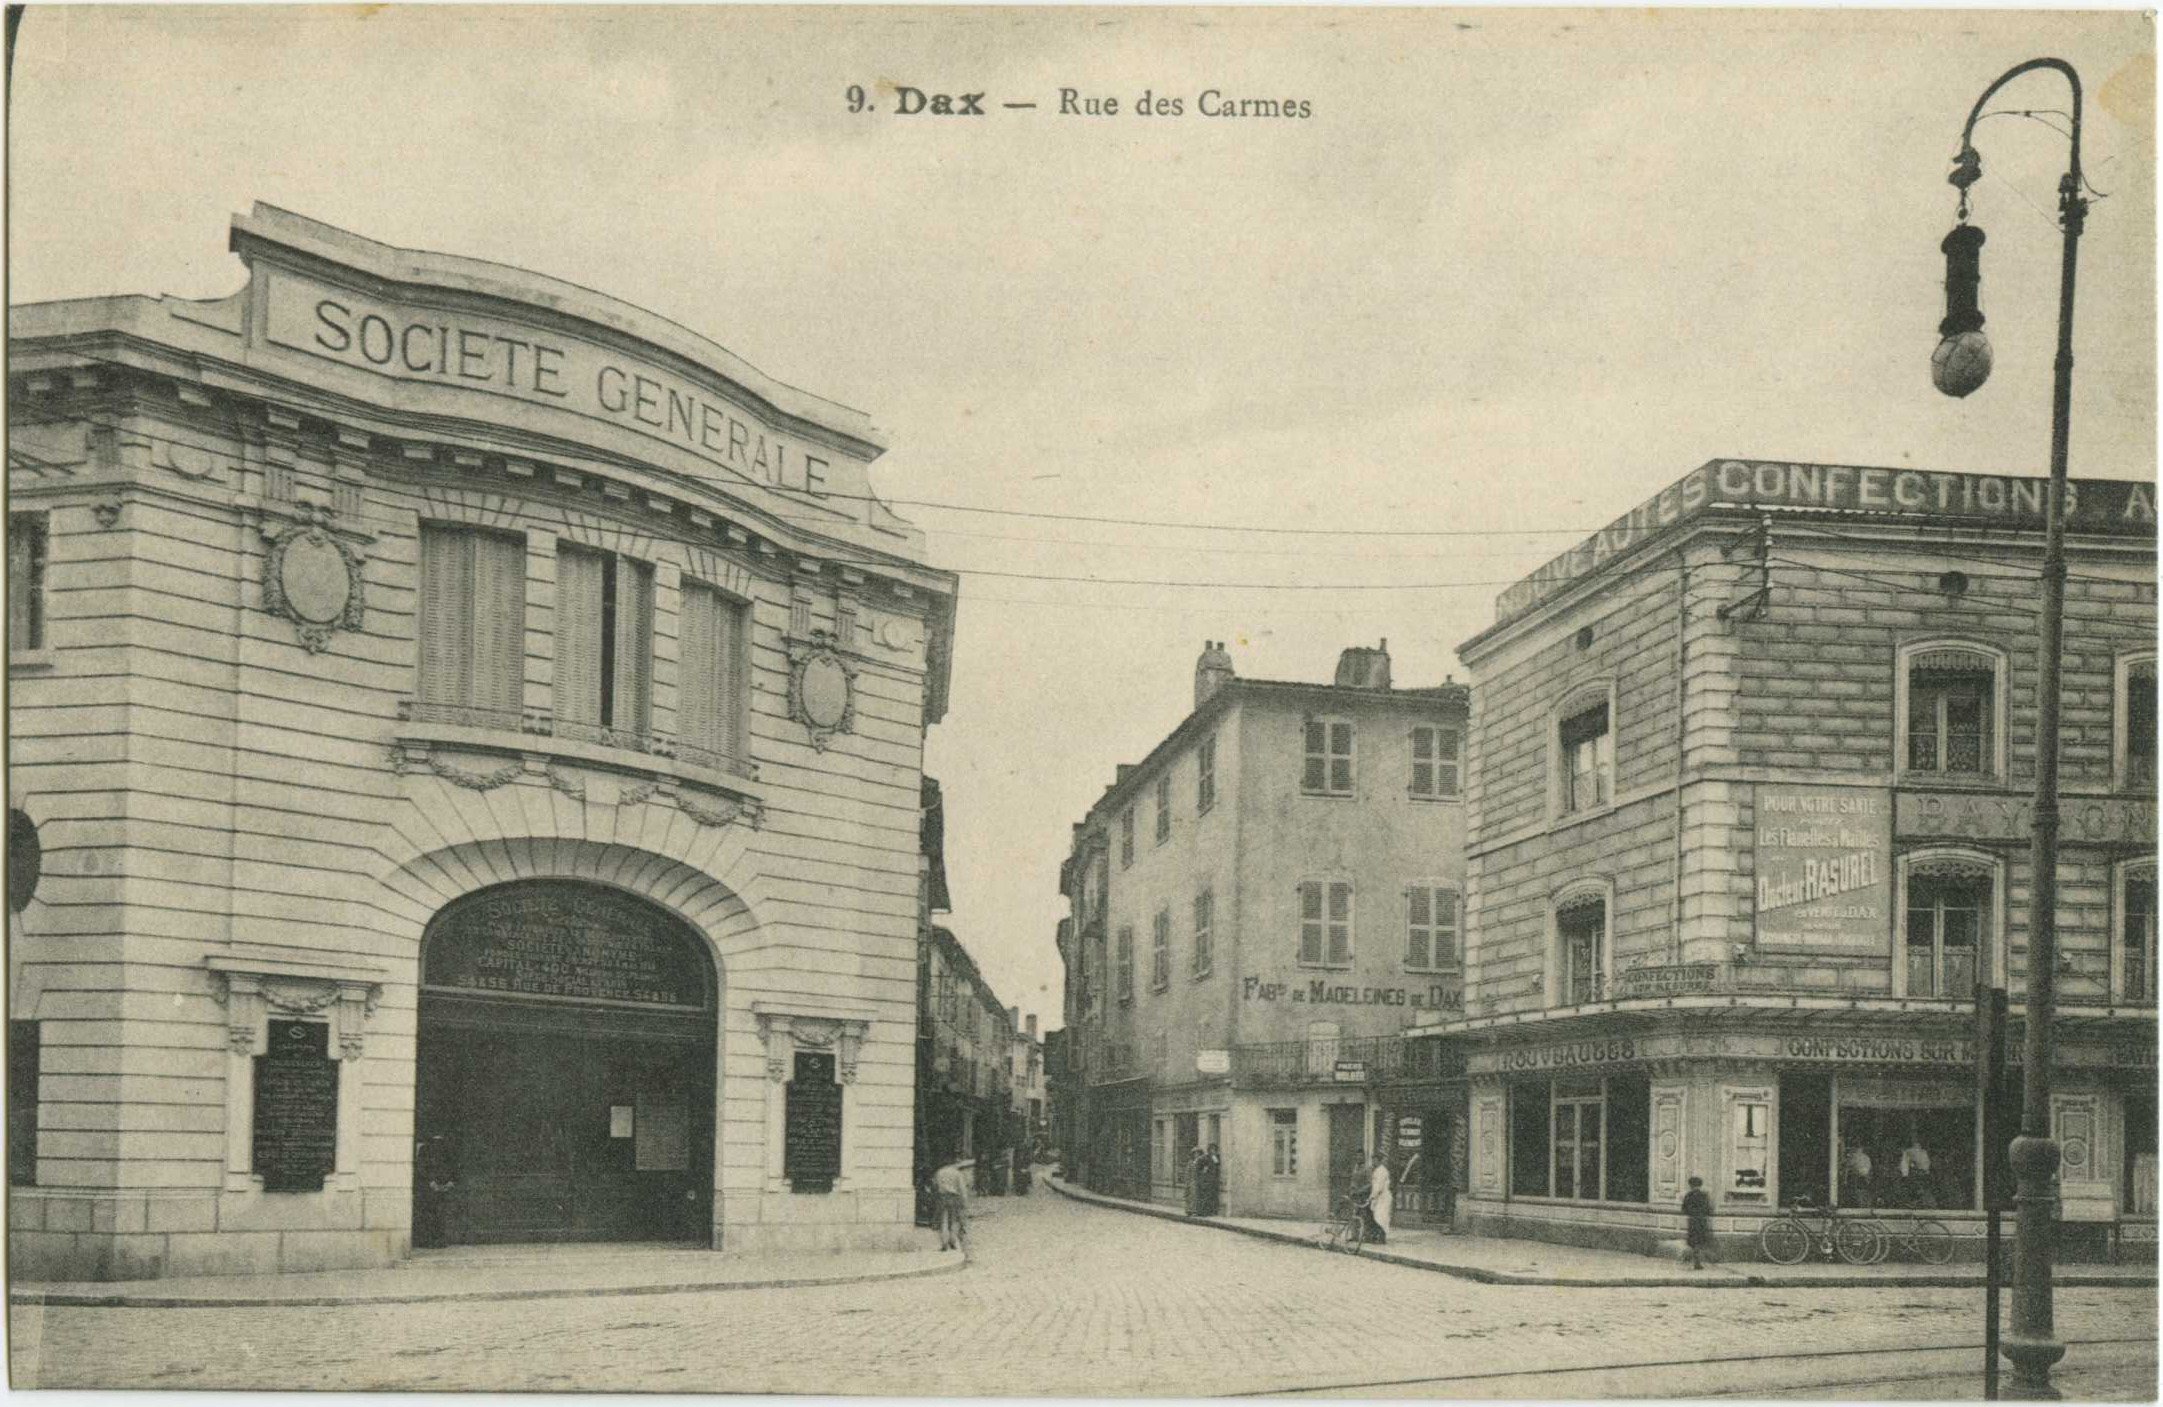 Dax - Rue des Carmes